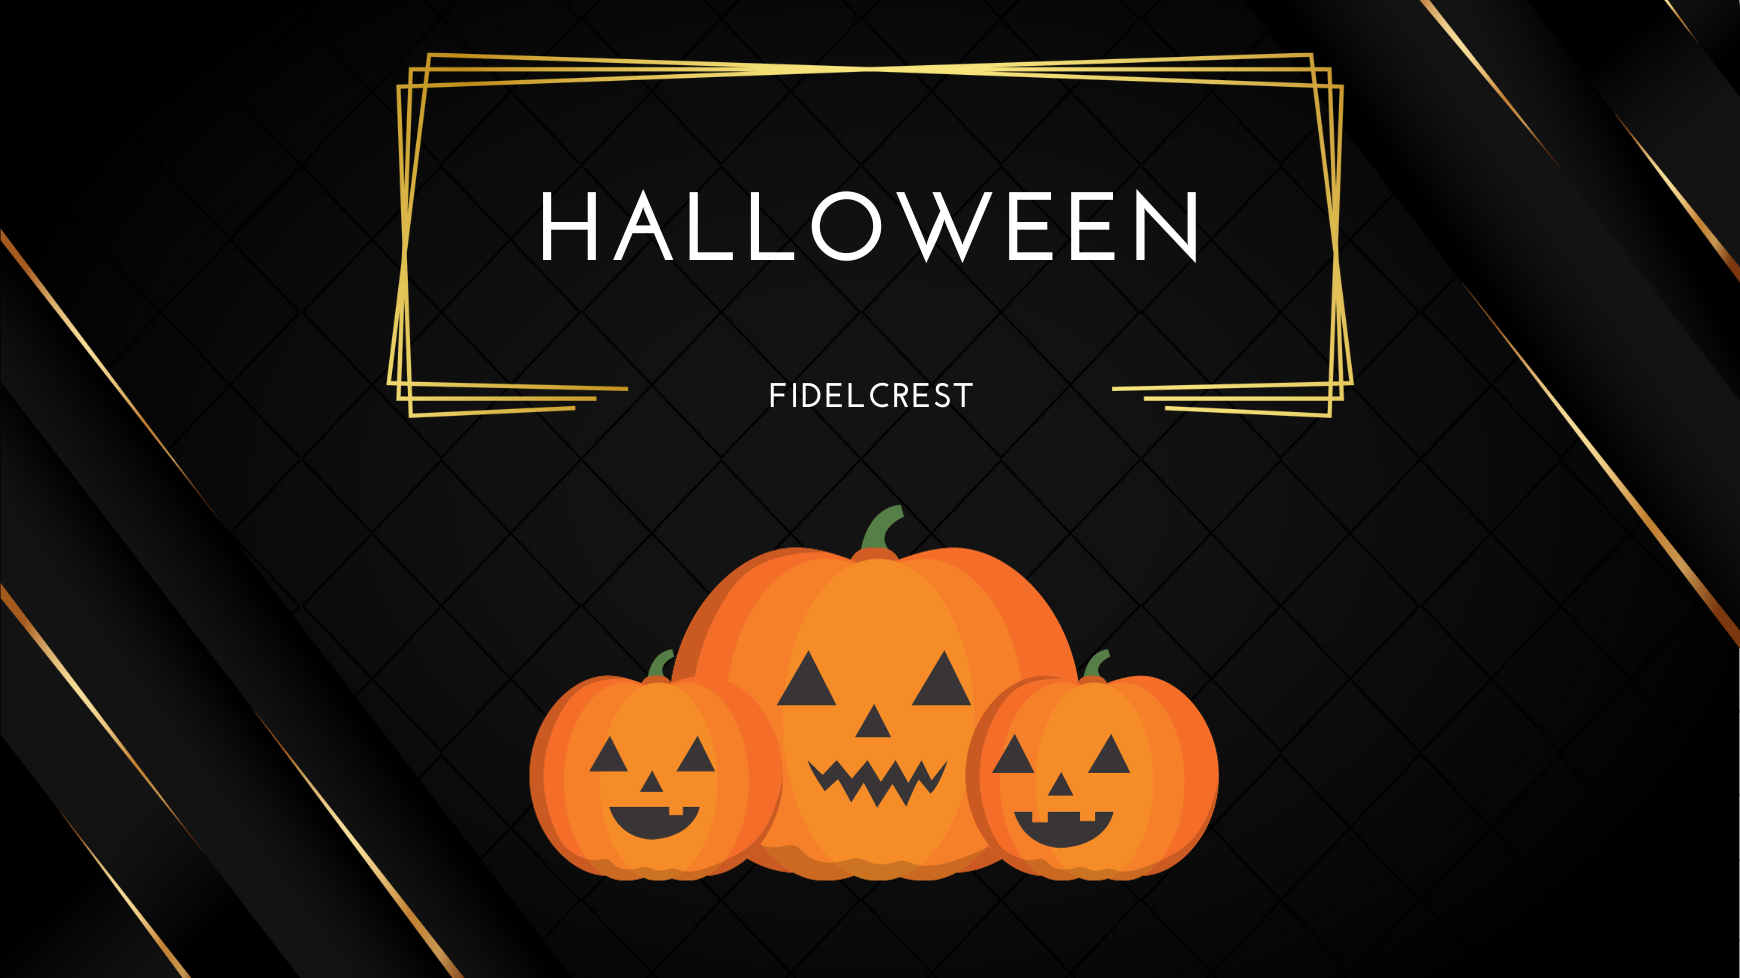 Fidelcrest Halloween Offer has started October 30, at 18:00 EEST, valid till November 2, at 23:59 EEST.